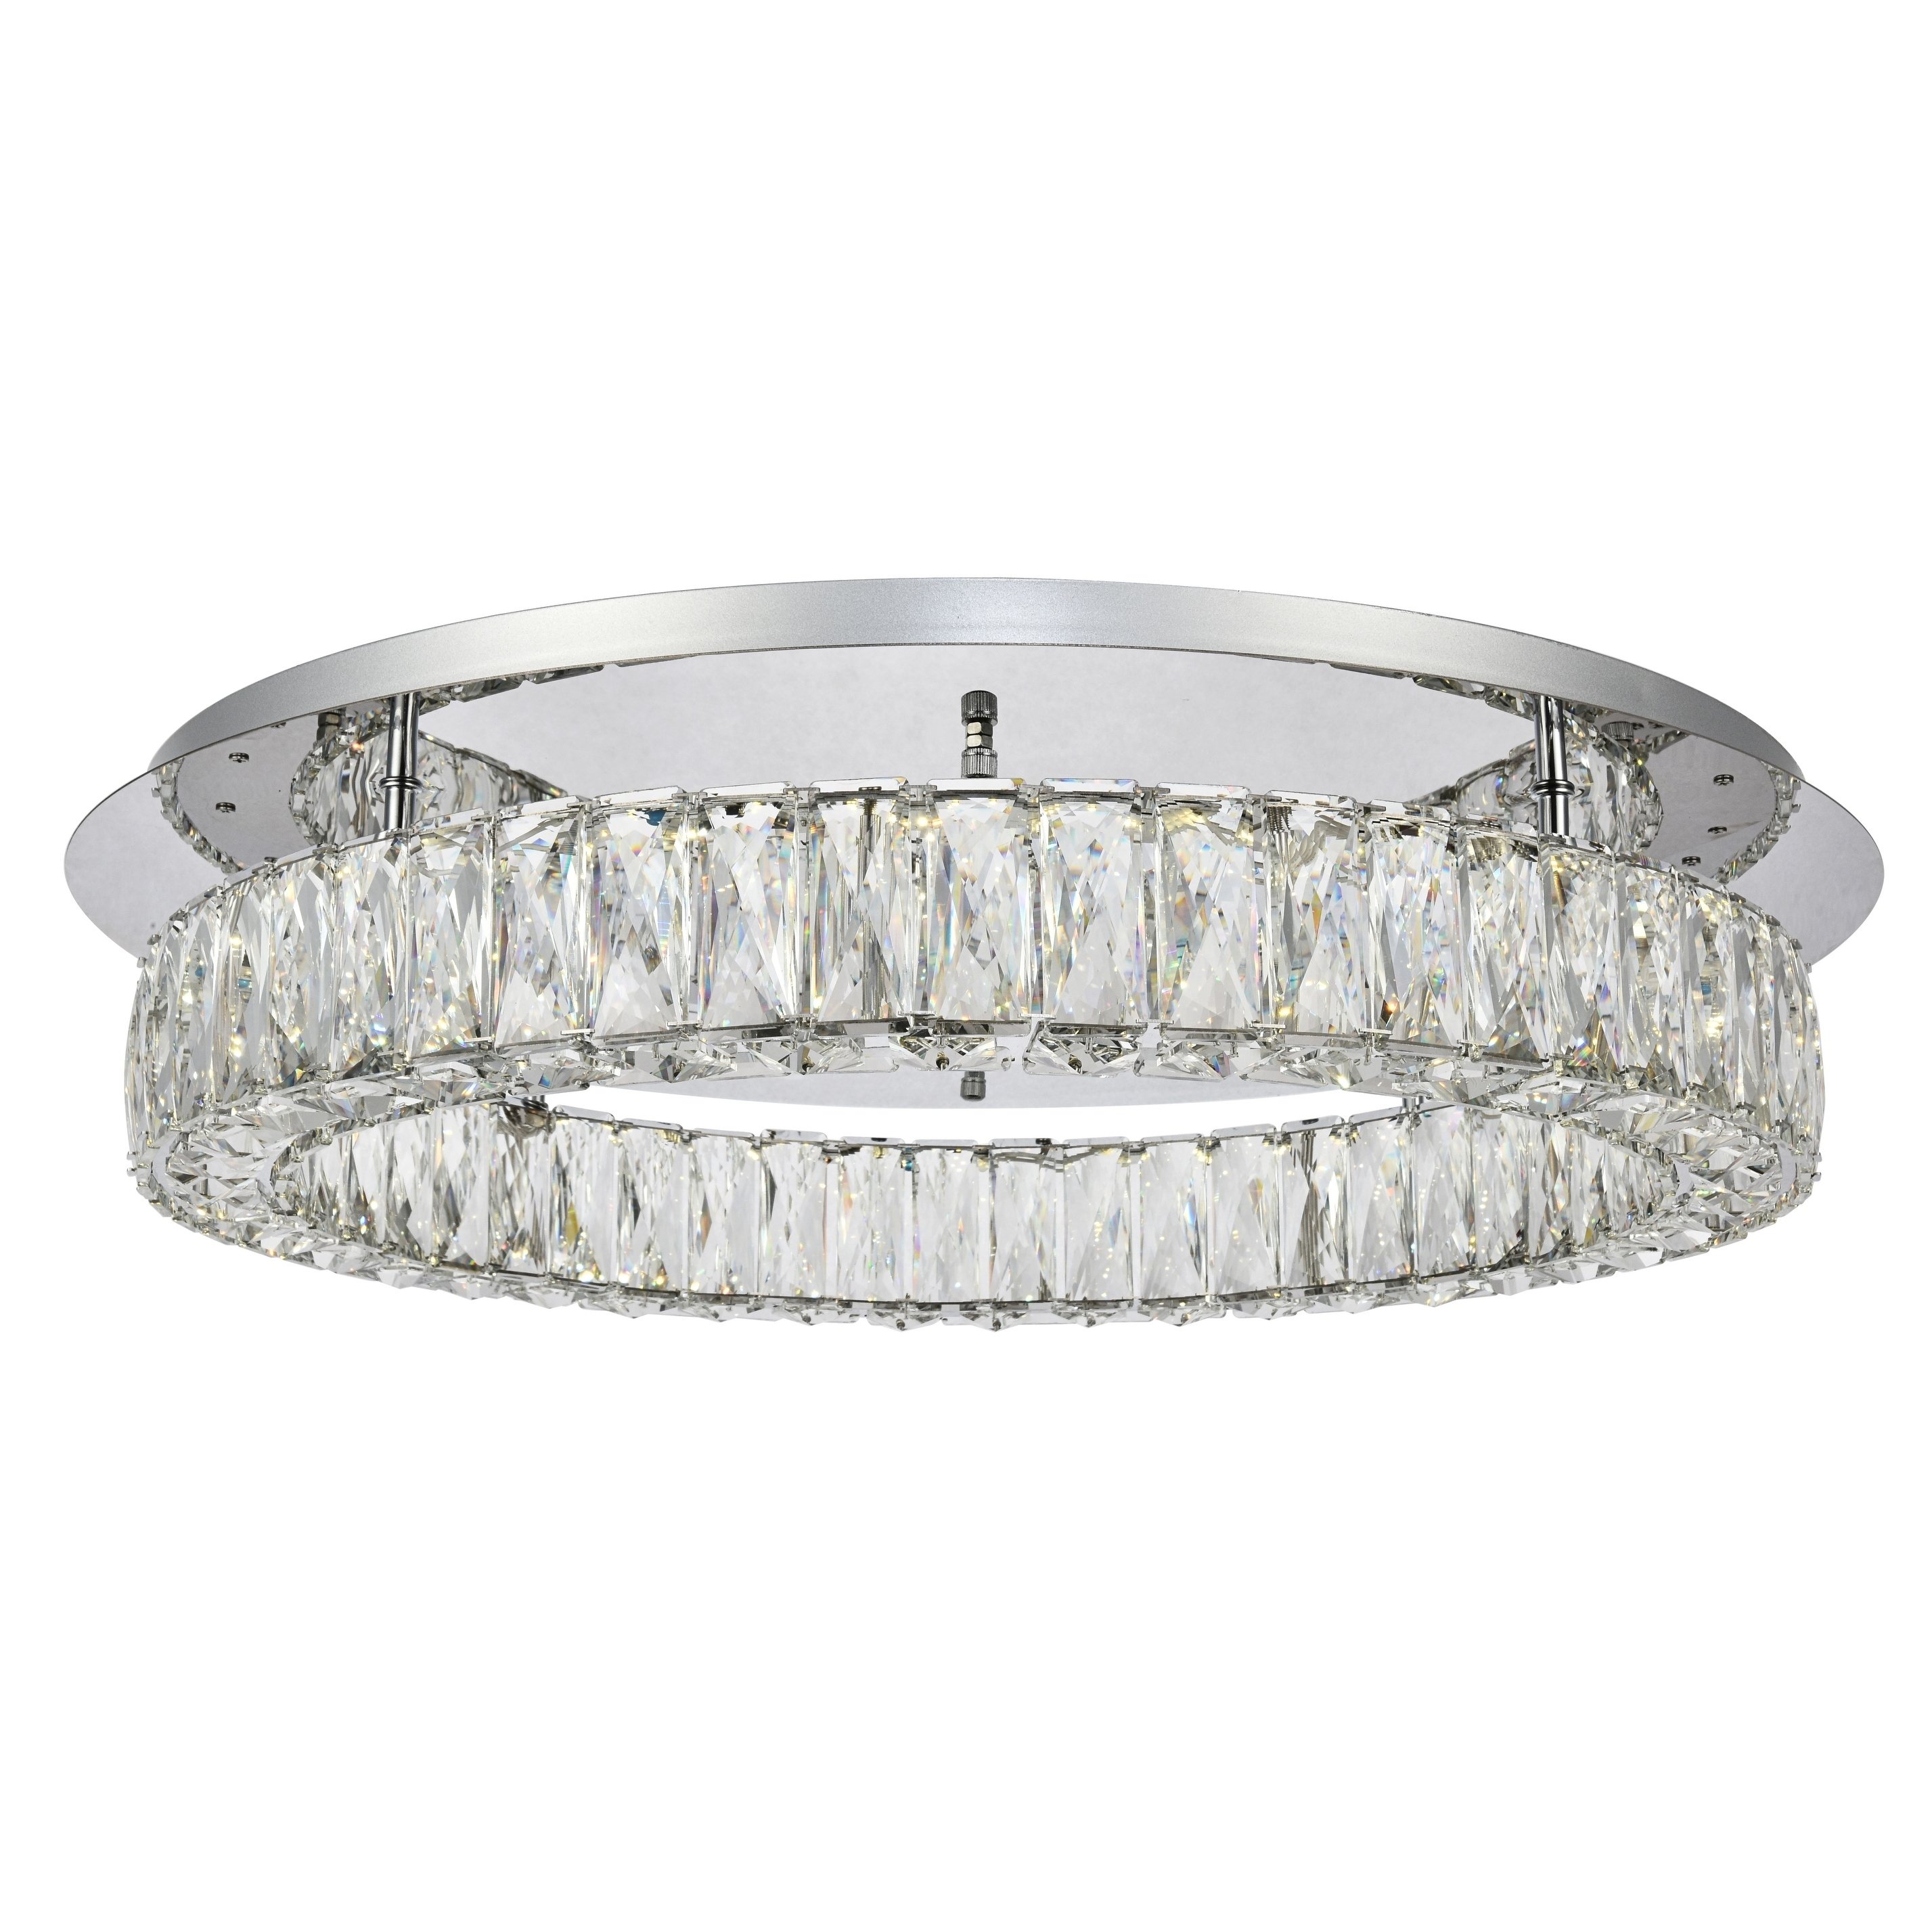 Ø 65 cm Monroe LED Crystal Monroe à un anneau à incasso